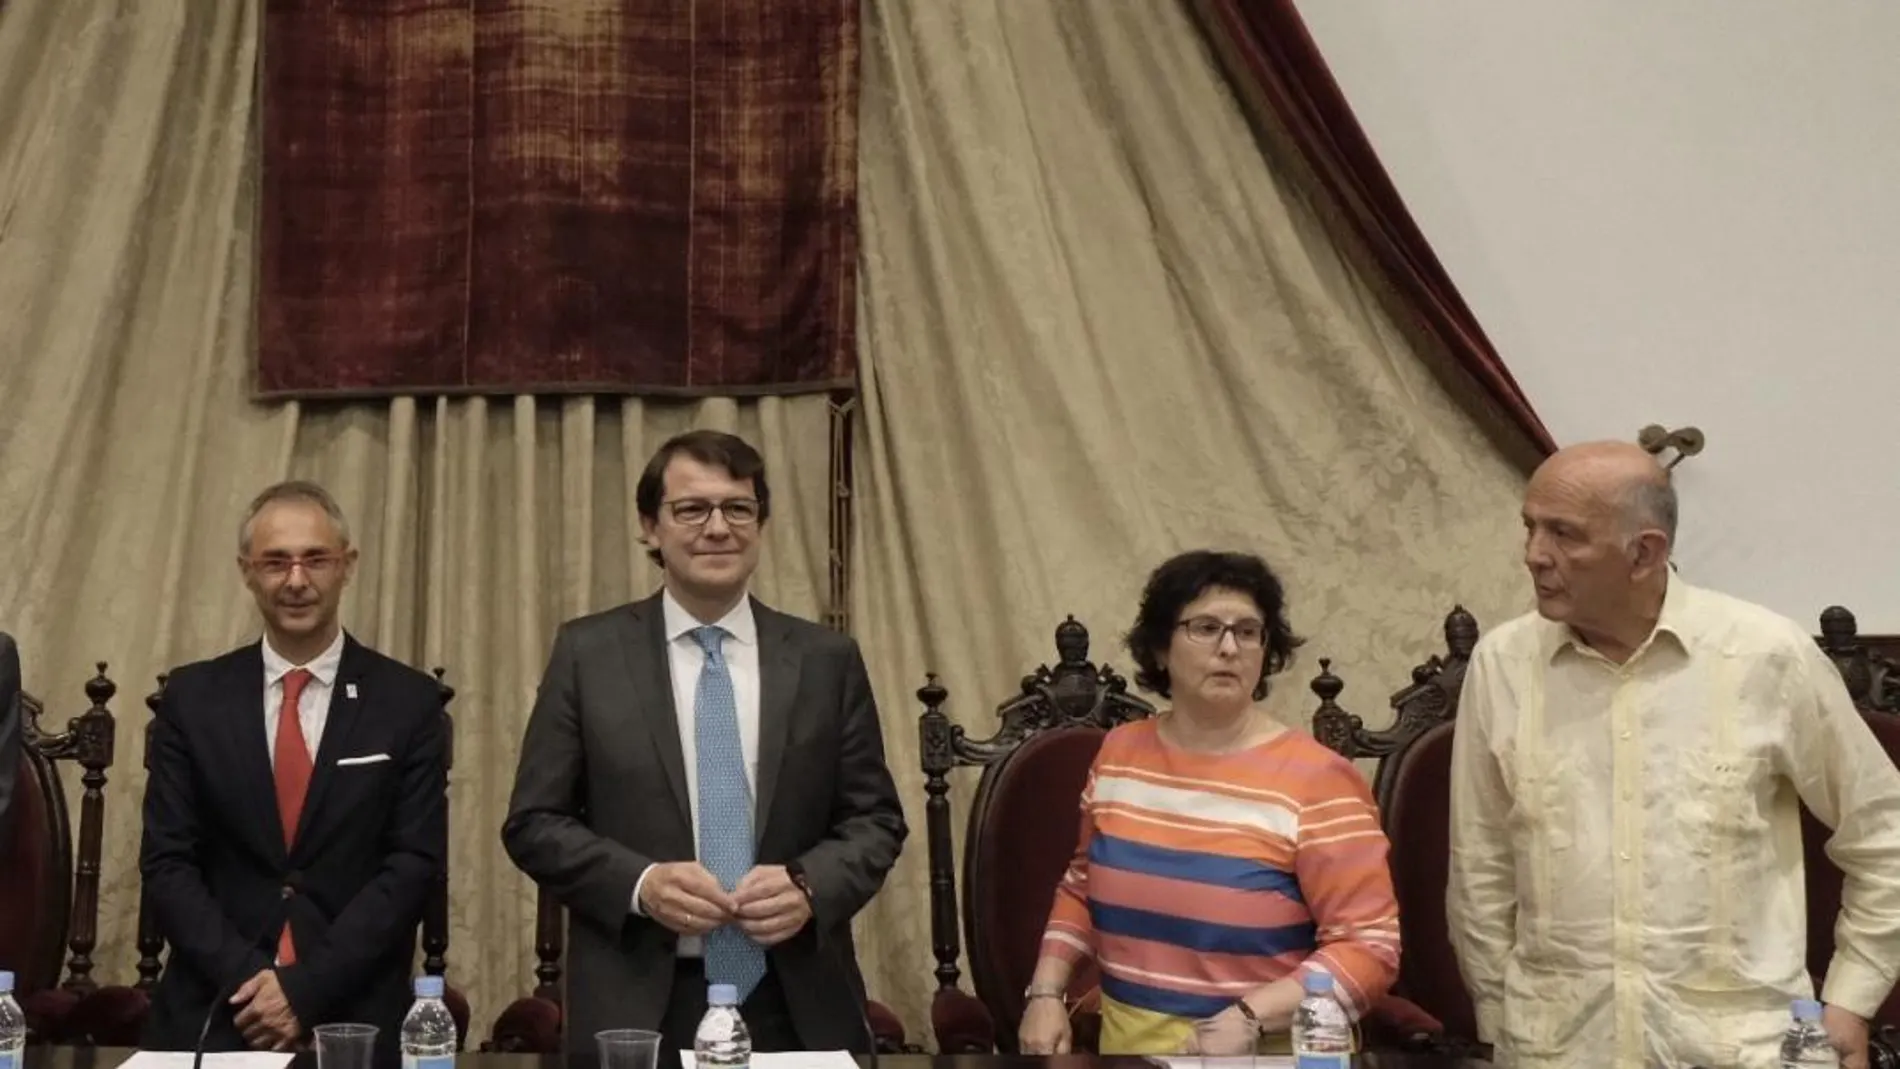 Ricardo Rivero, Alfonso Fernández Mañueco, Izáskum Álvarez y Manuel Alcántara, en la inauguración